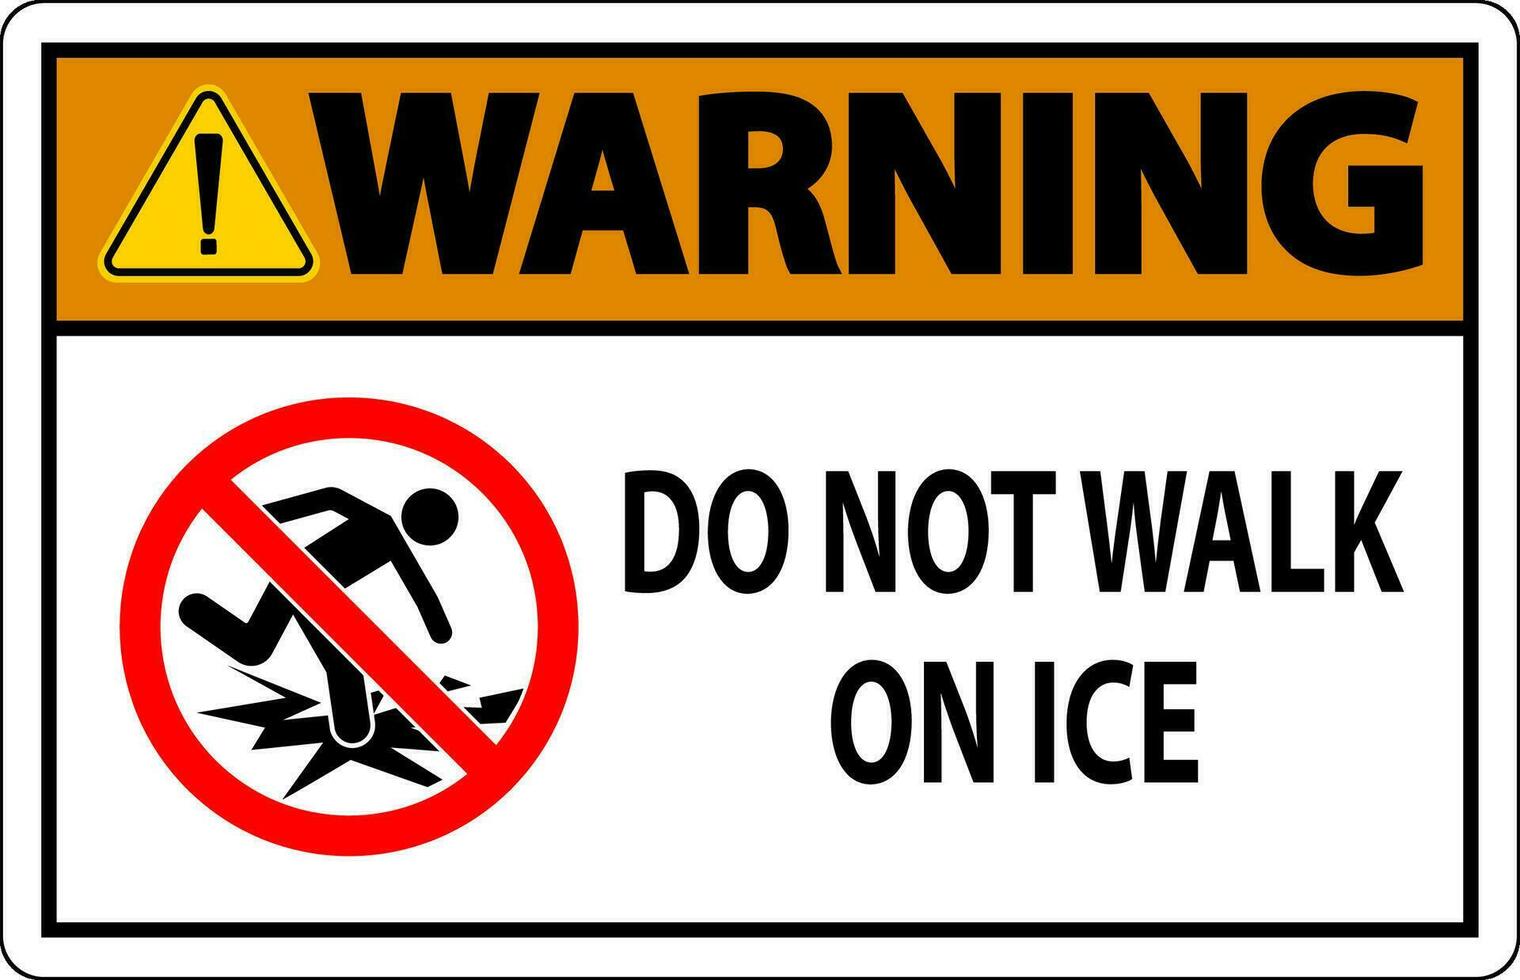 Warnung Zeichen tun nicht gehen auf Eis vektor